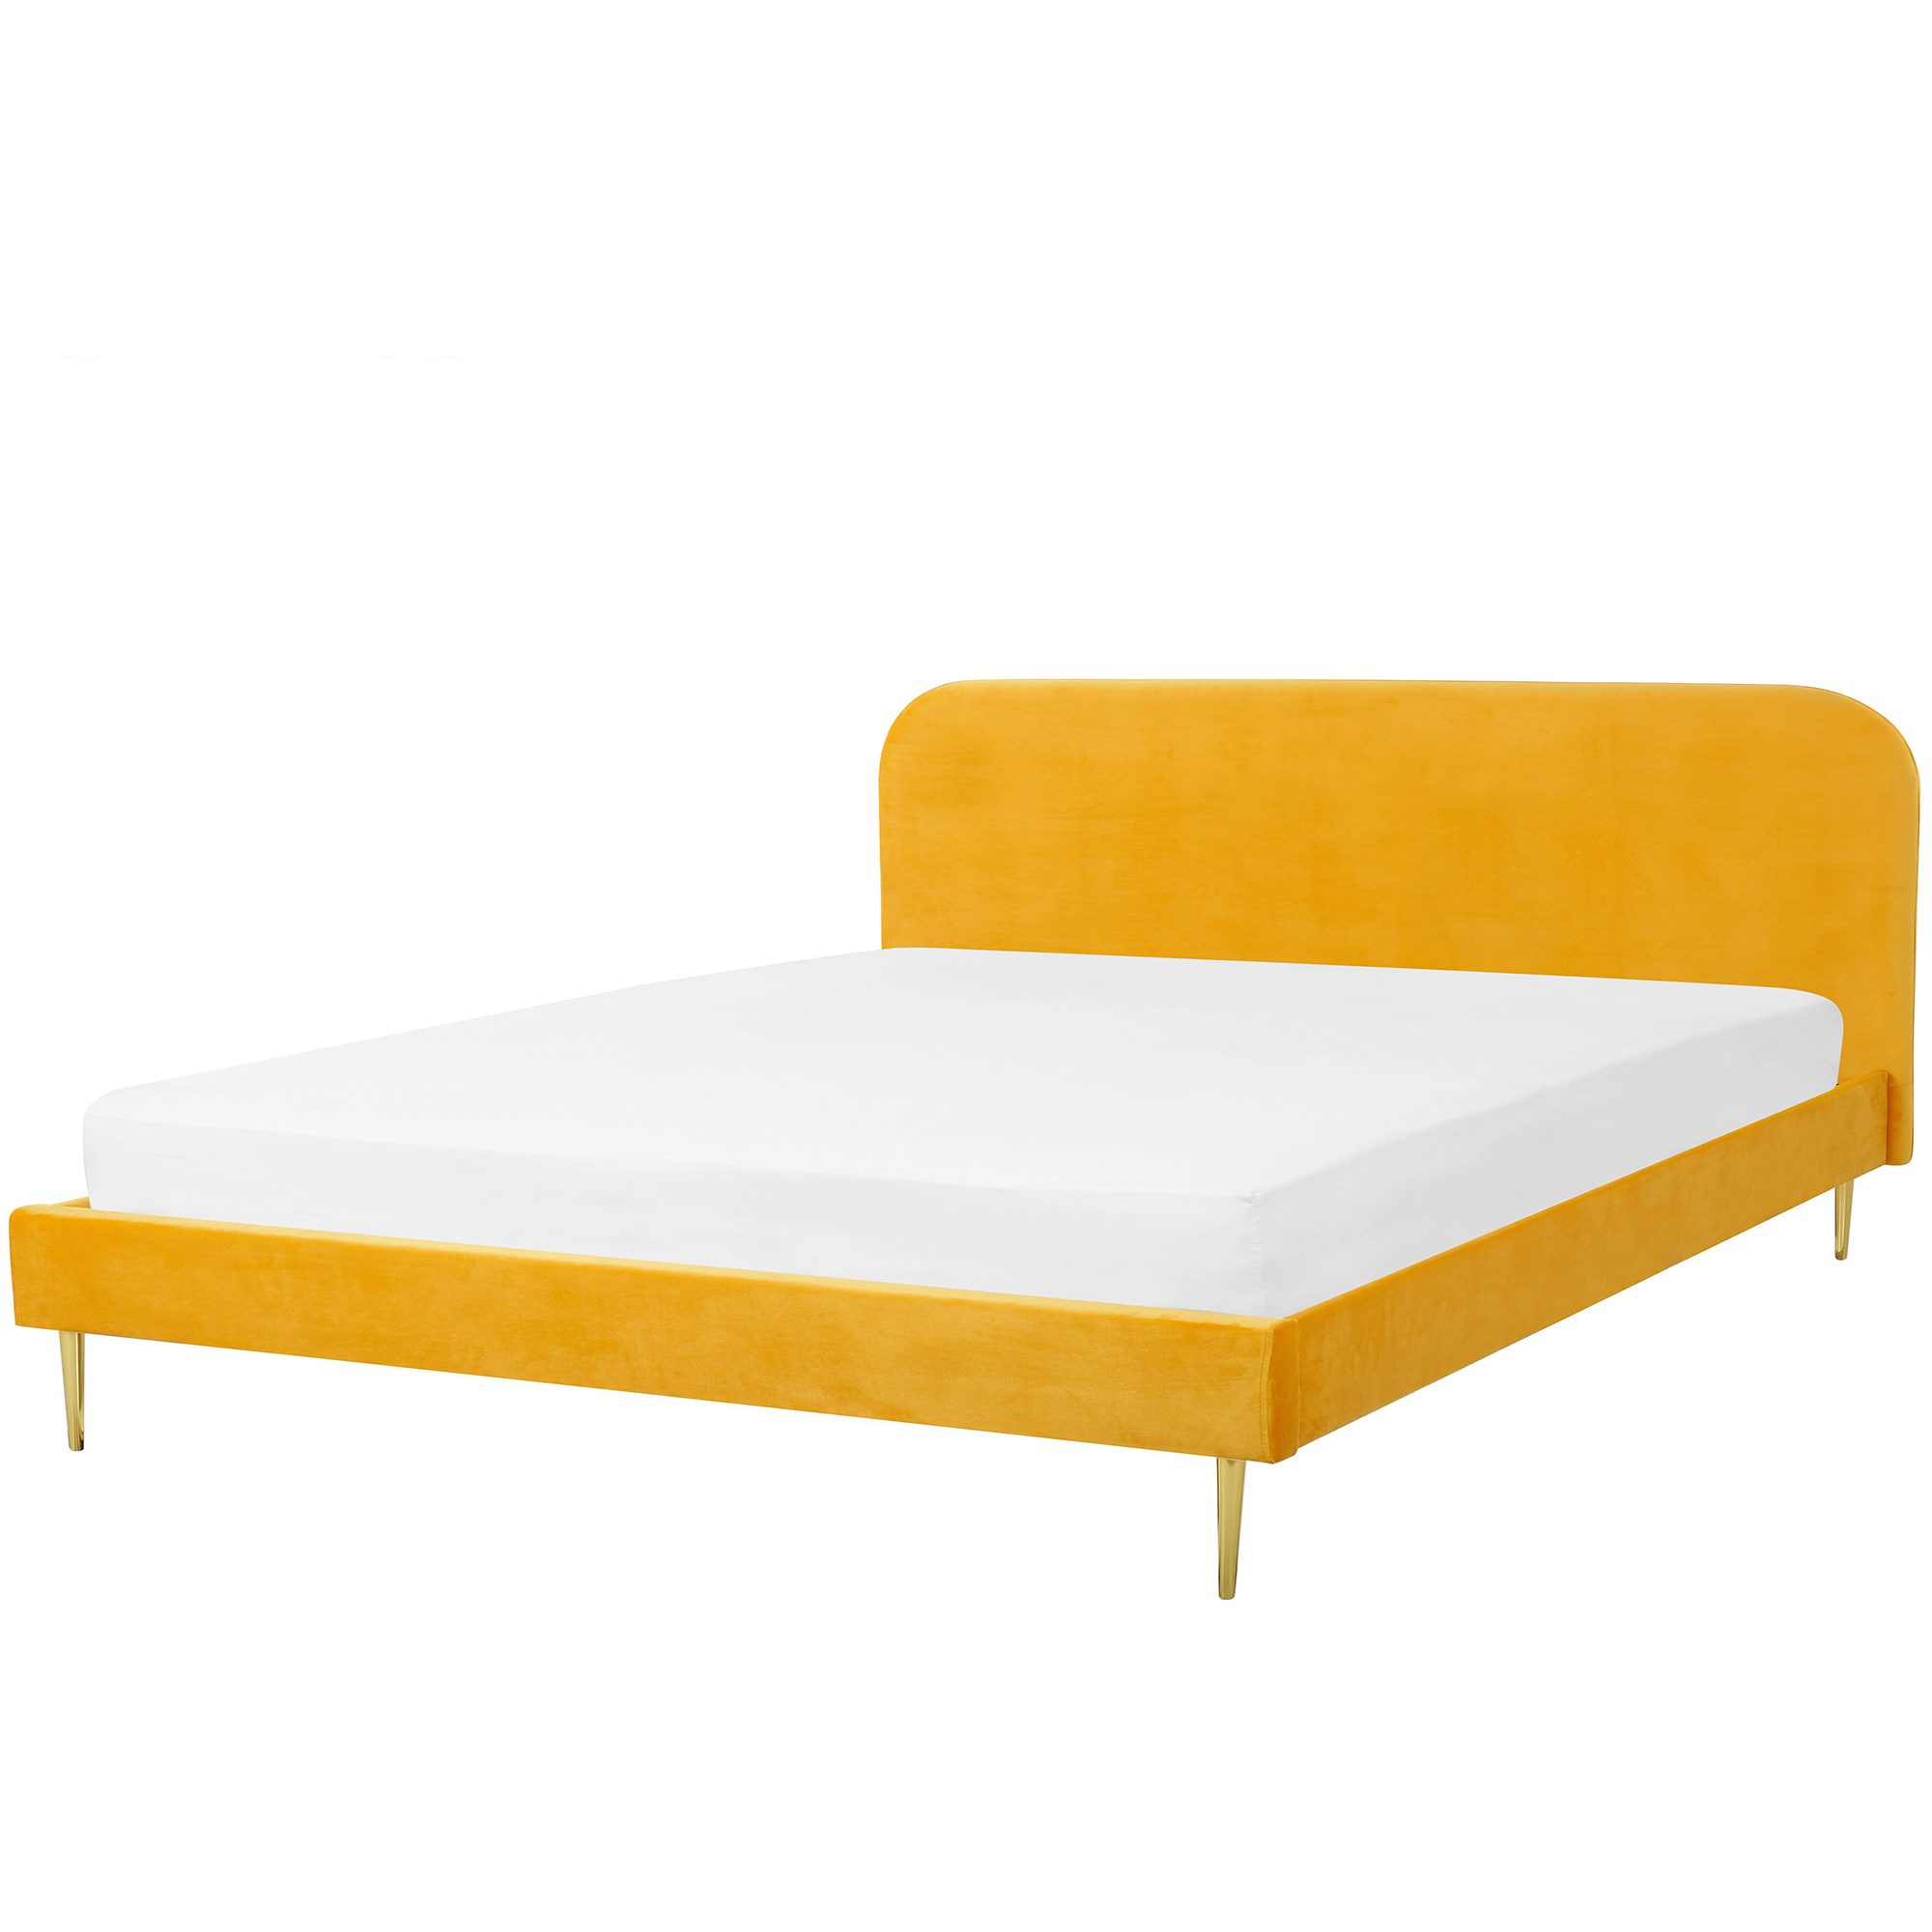 Beliani Bed Yellow Velvet Upholstery EU Super King Size Golden Legs Headboard Slatted Frame 6 ft Minimalist Design